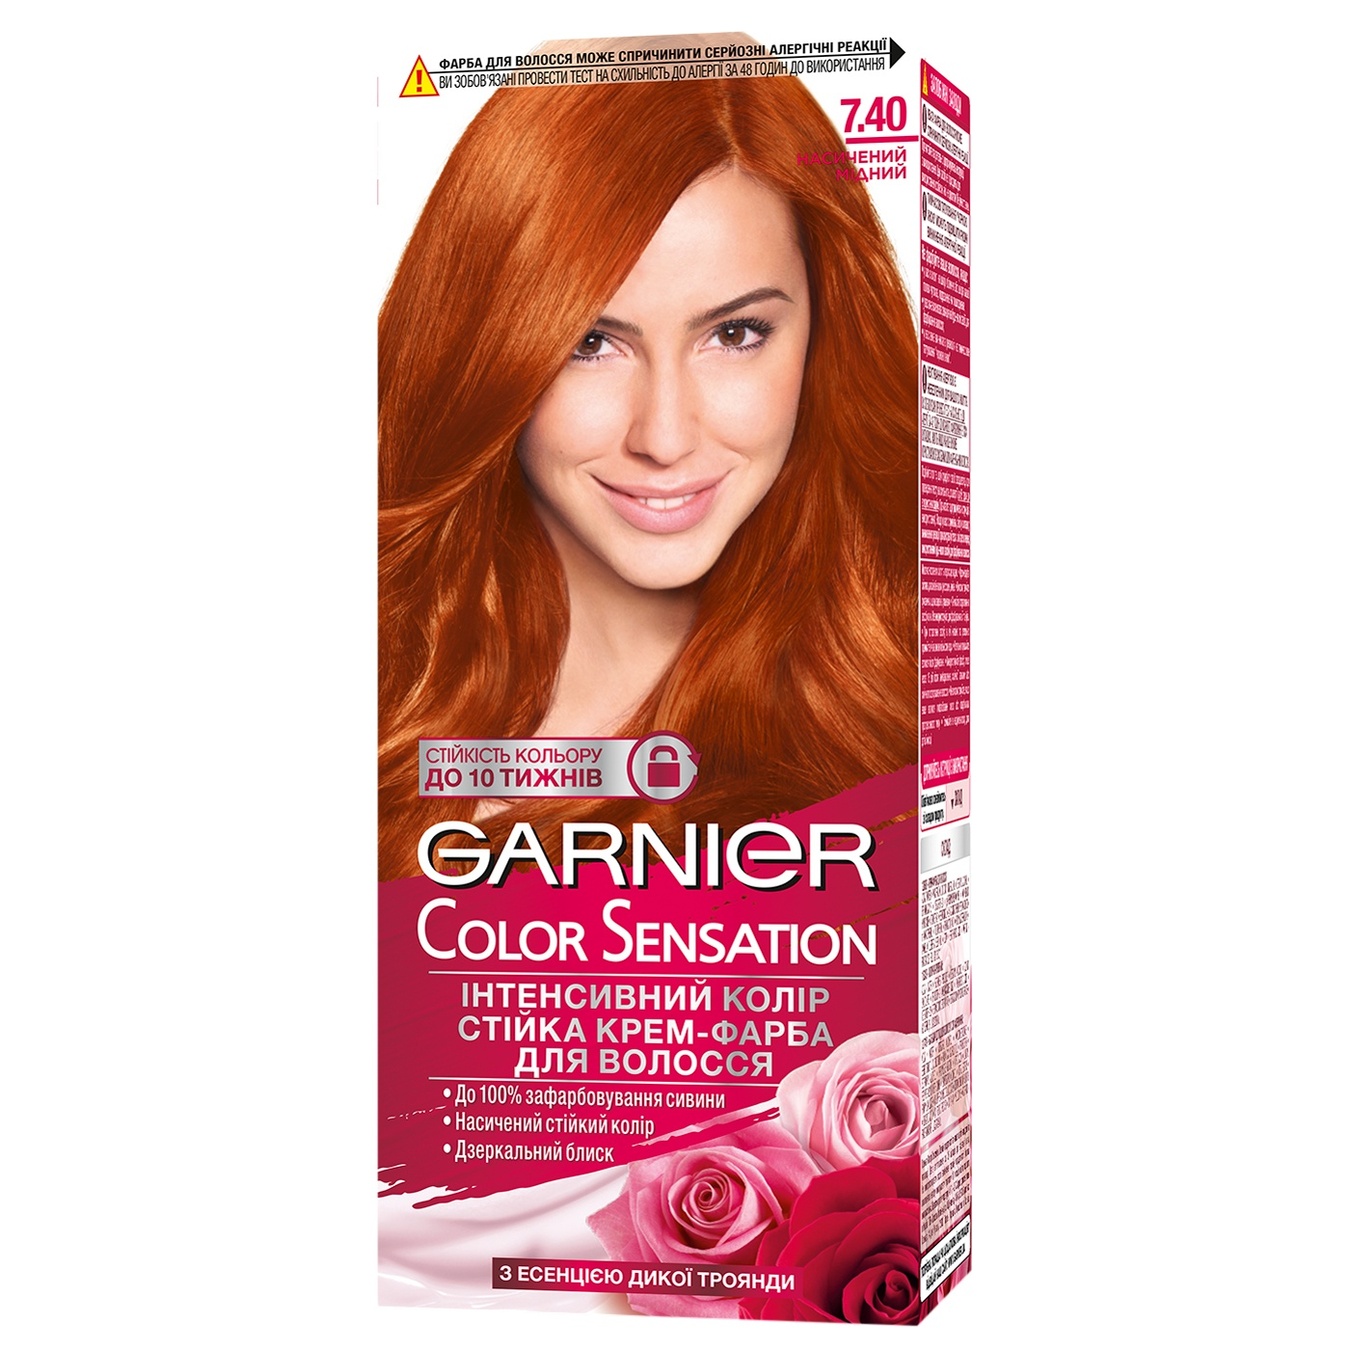 Cтійка крем-фарба для волосся Color Sensation відтінок 7.40